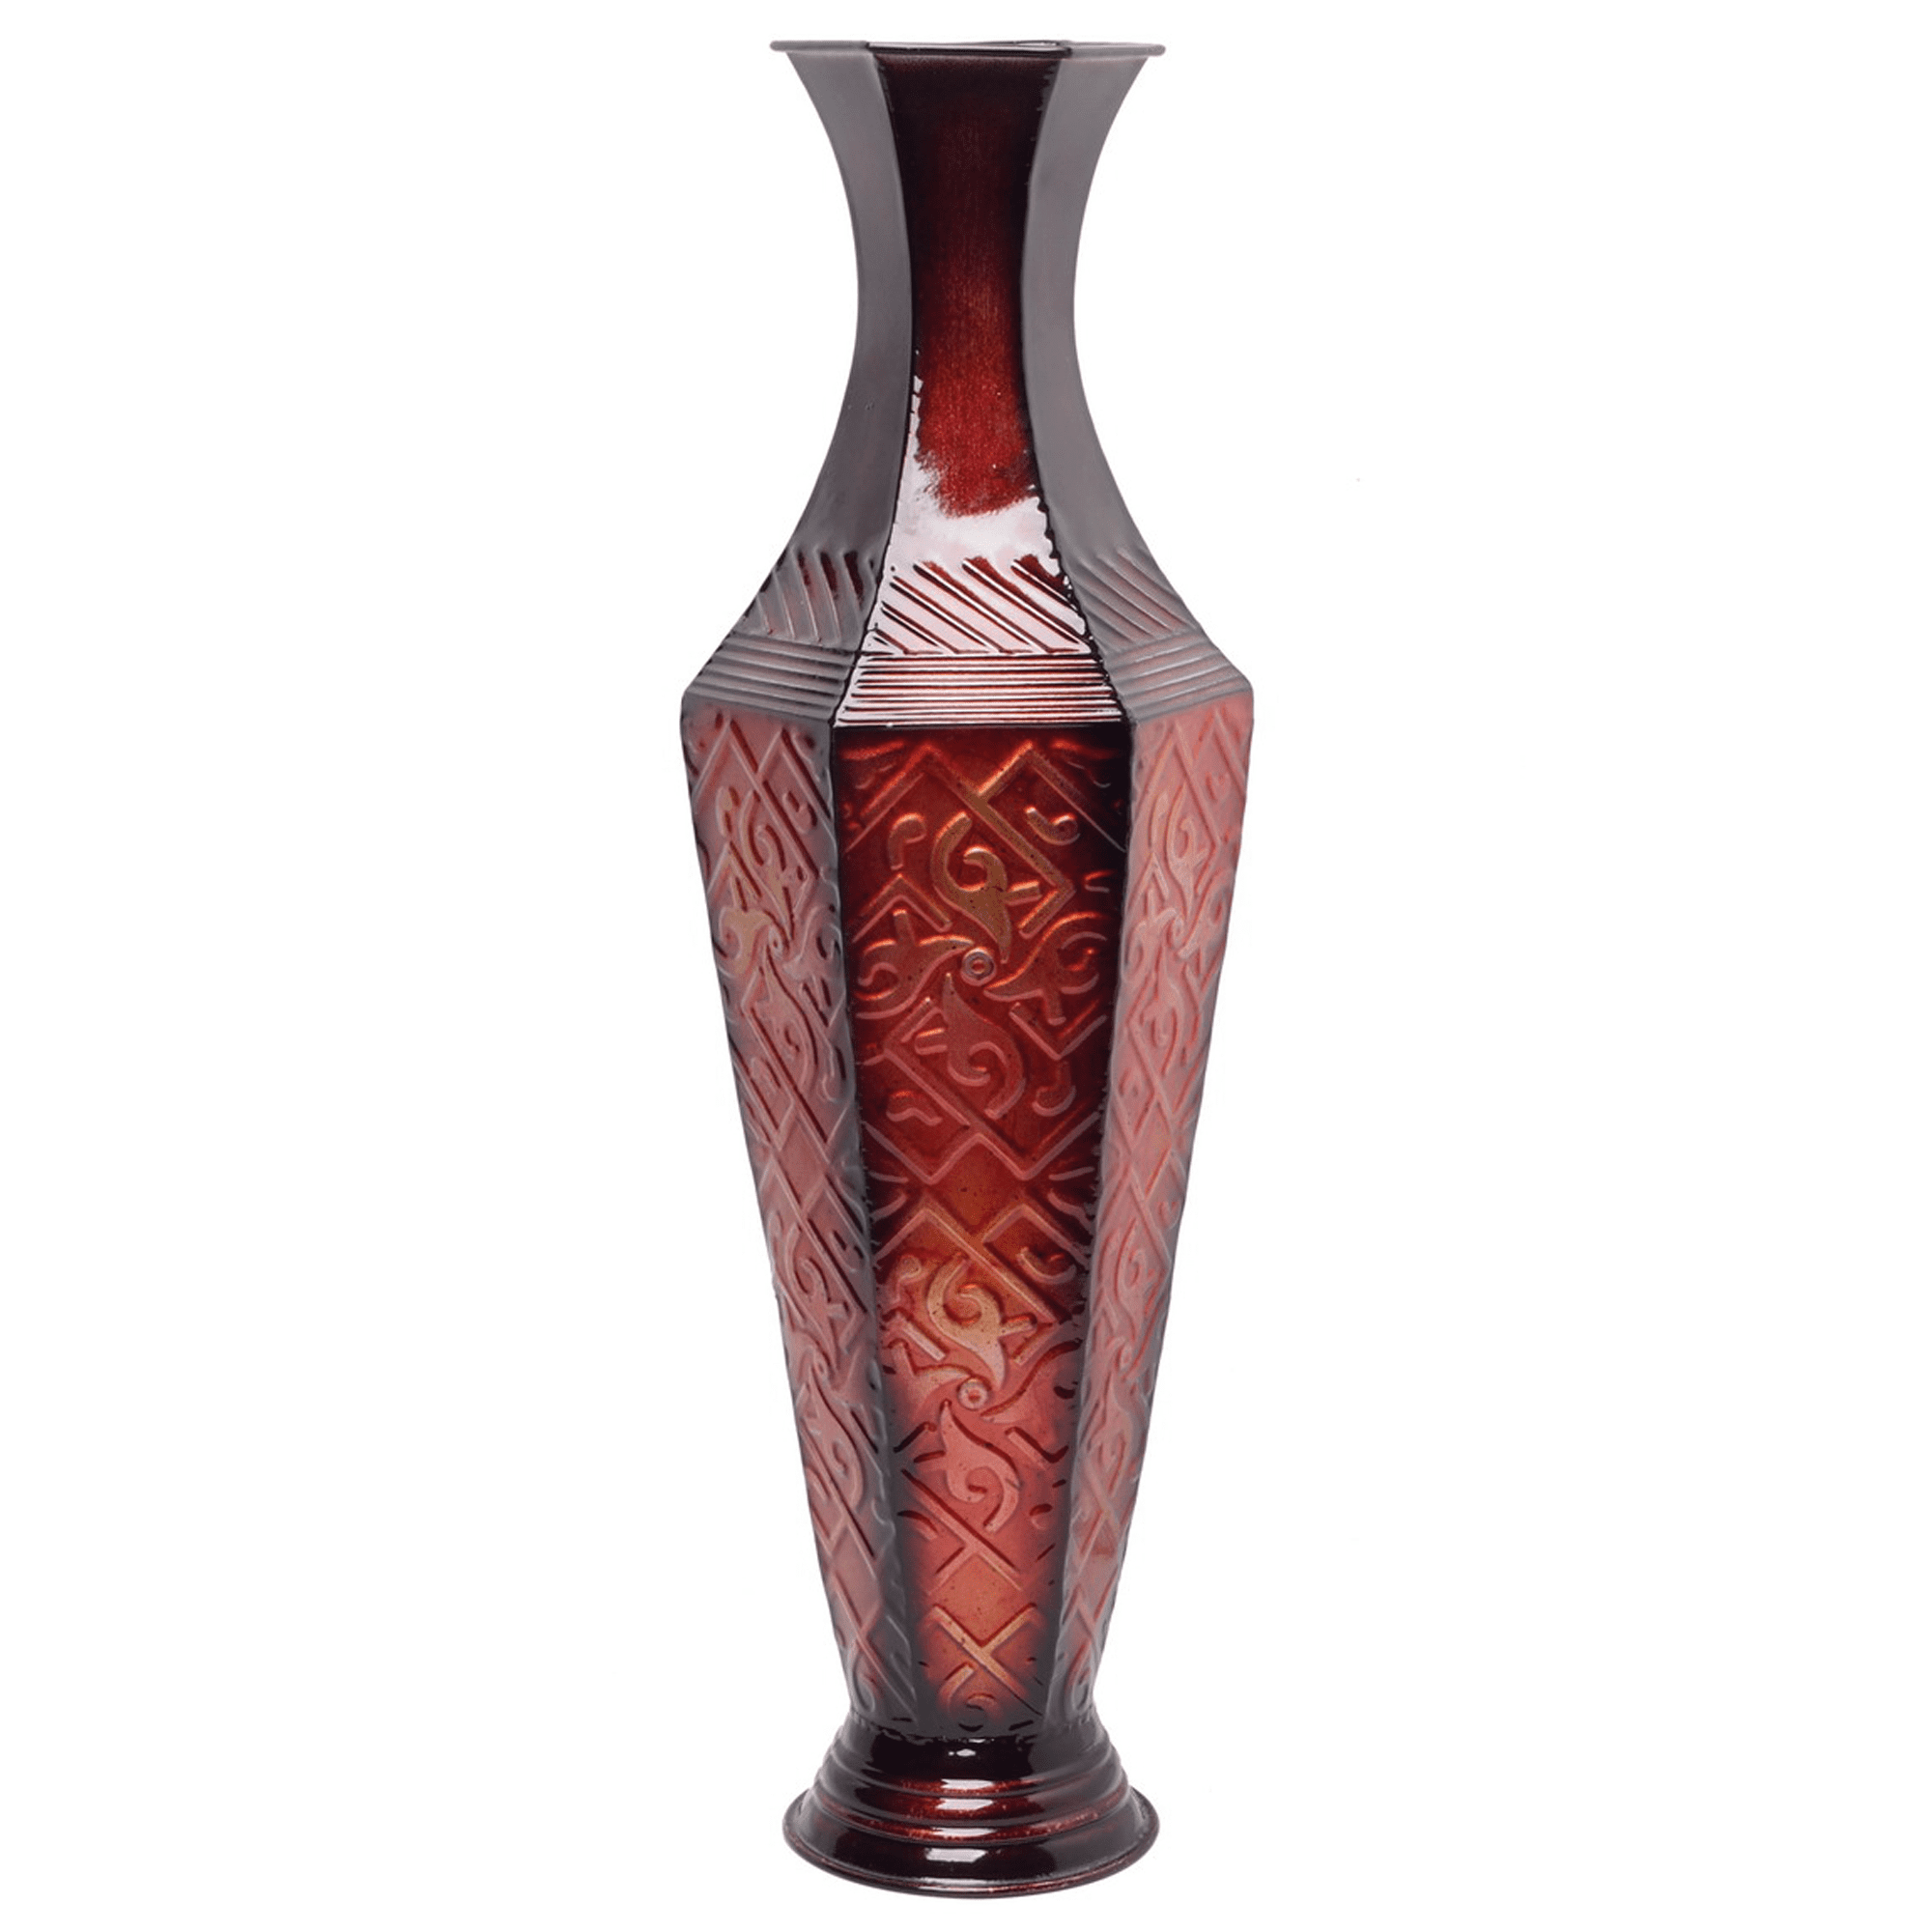 Gift Hosley Tall Embossed Vase Red Home Decor Living Room Floor Vase Pretty 